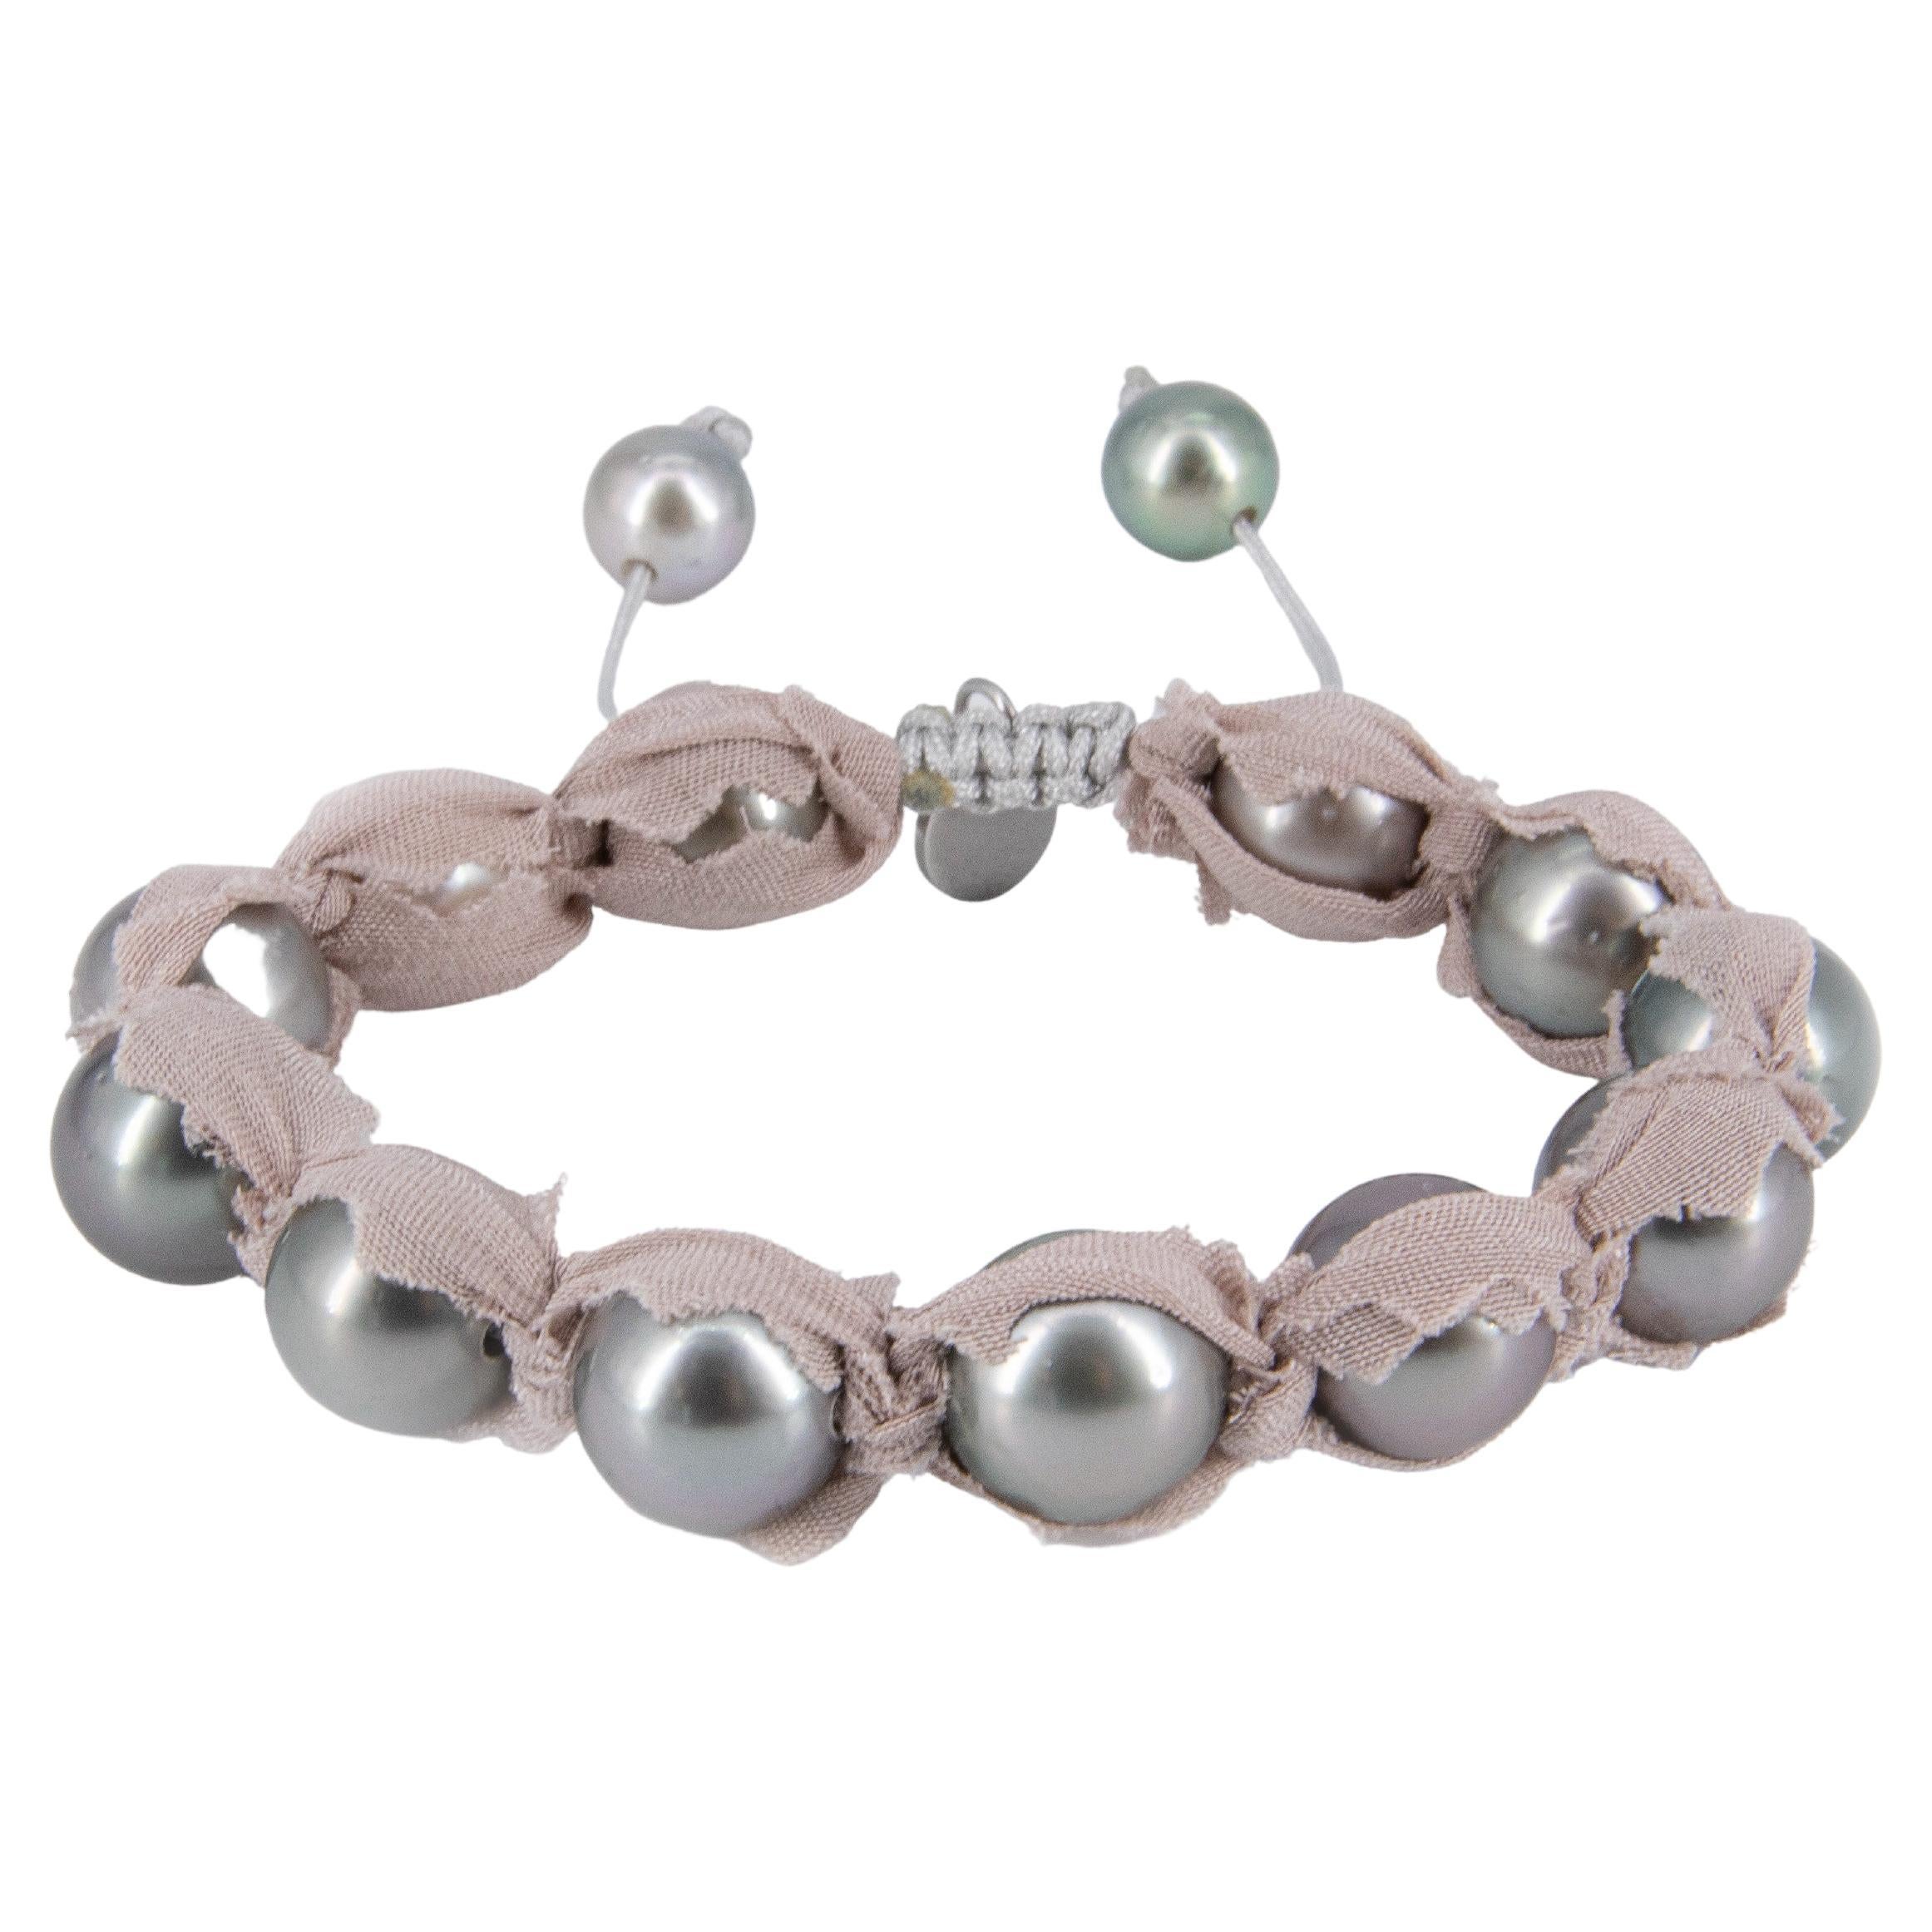 Ce bracelet est composé de perles de Tahiti grises avec 2 cônes pavés de diamants en argent sterling noirci et de 3 grosses perles d'eau douce baroques irisées rosées/violettes. Il est perlé sur un élastique de haute qualité enduit de coton noir, ce